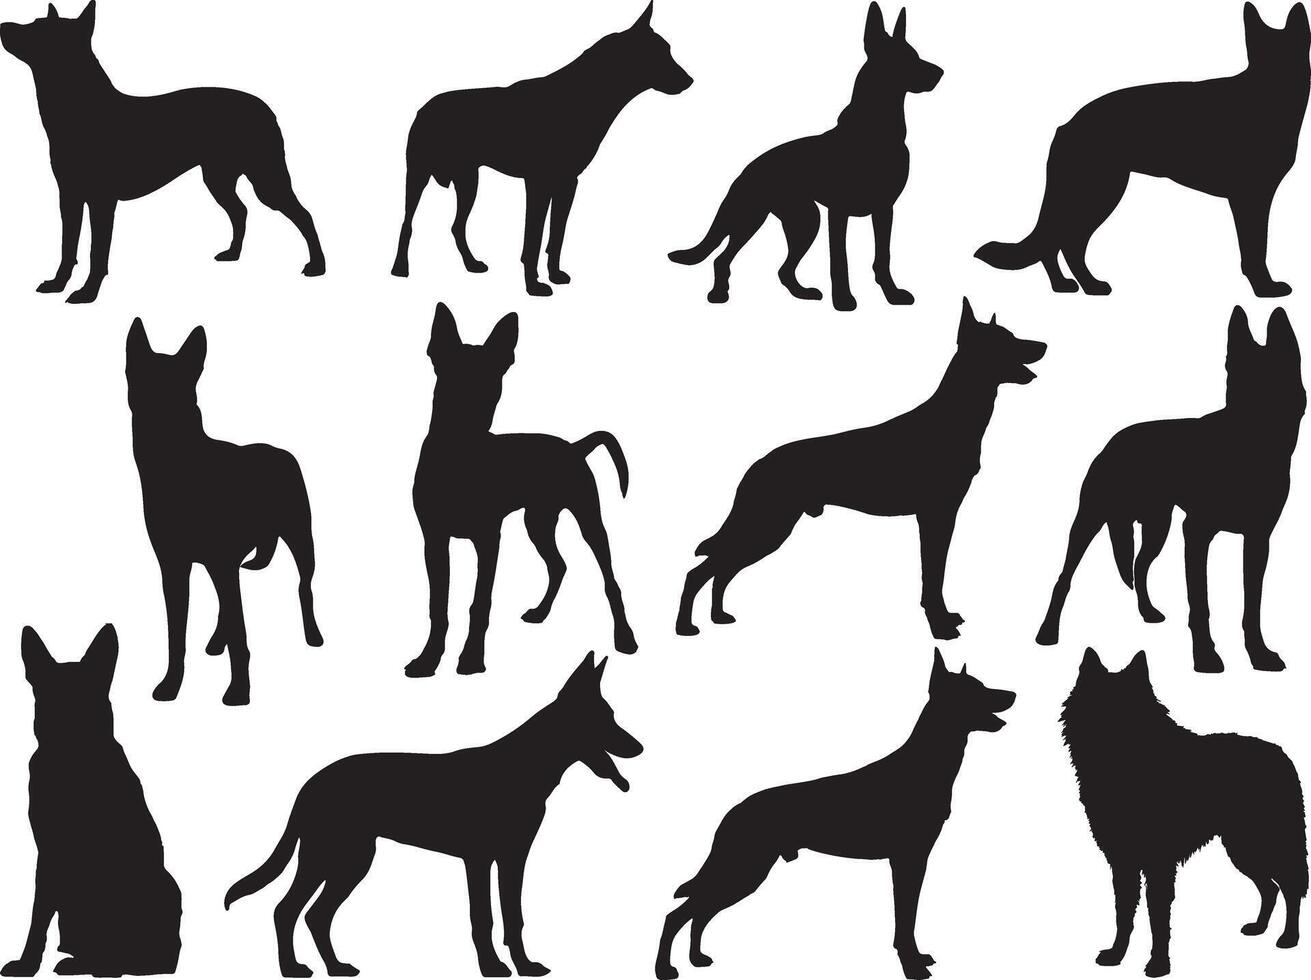 Belgian shepherd dogs silhouette on white background vector